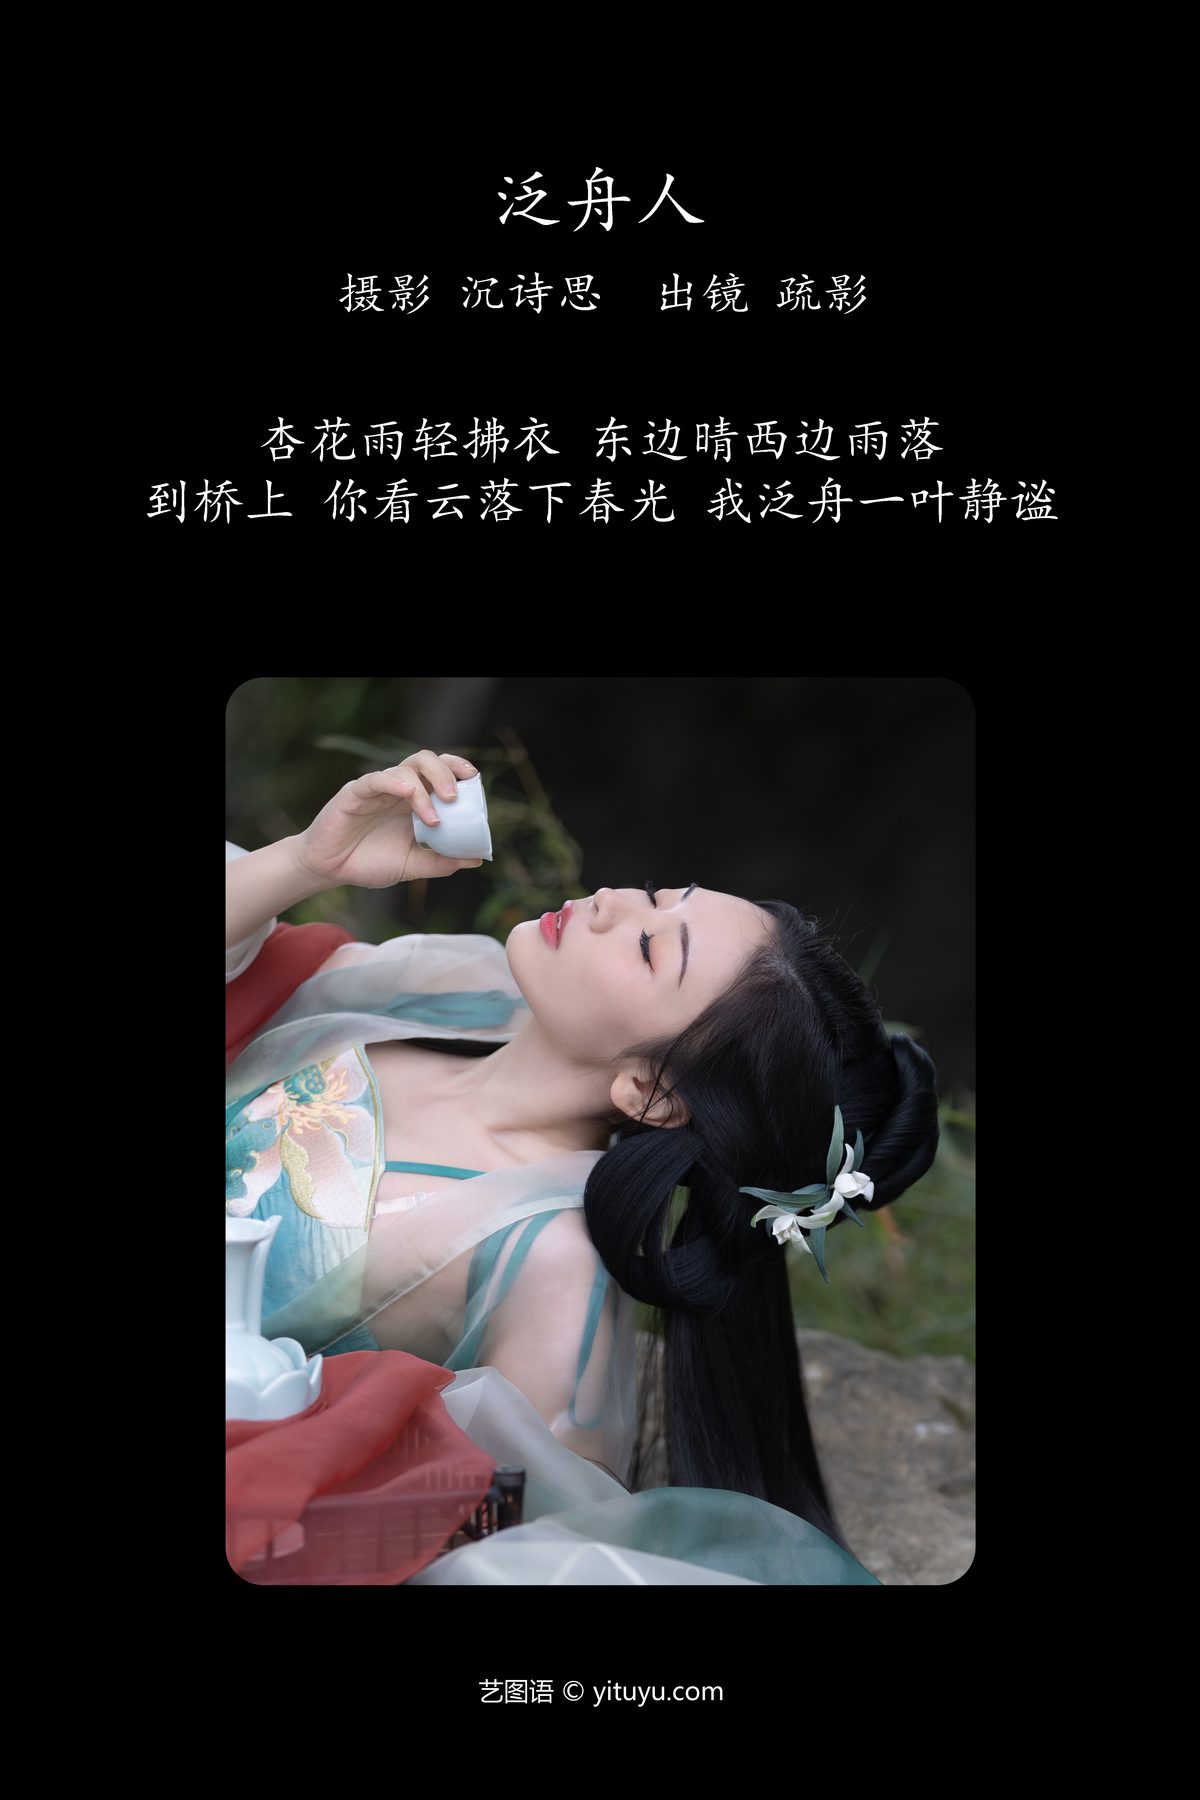 YiTuYu艺图语 Vol 4198 Shu Ying 0001 1008263844.jpg